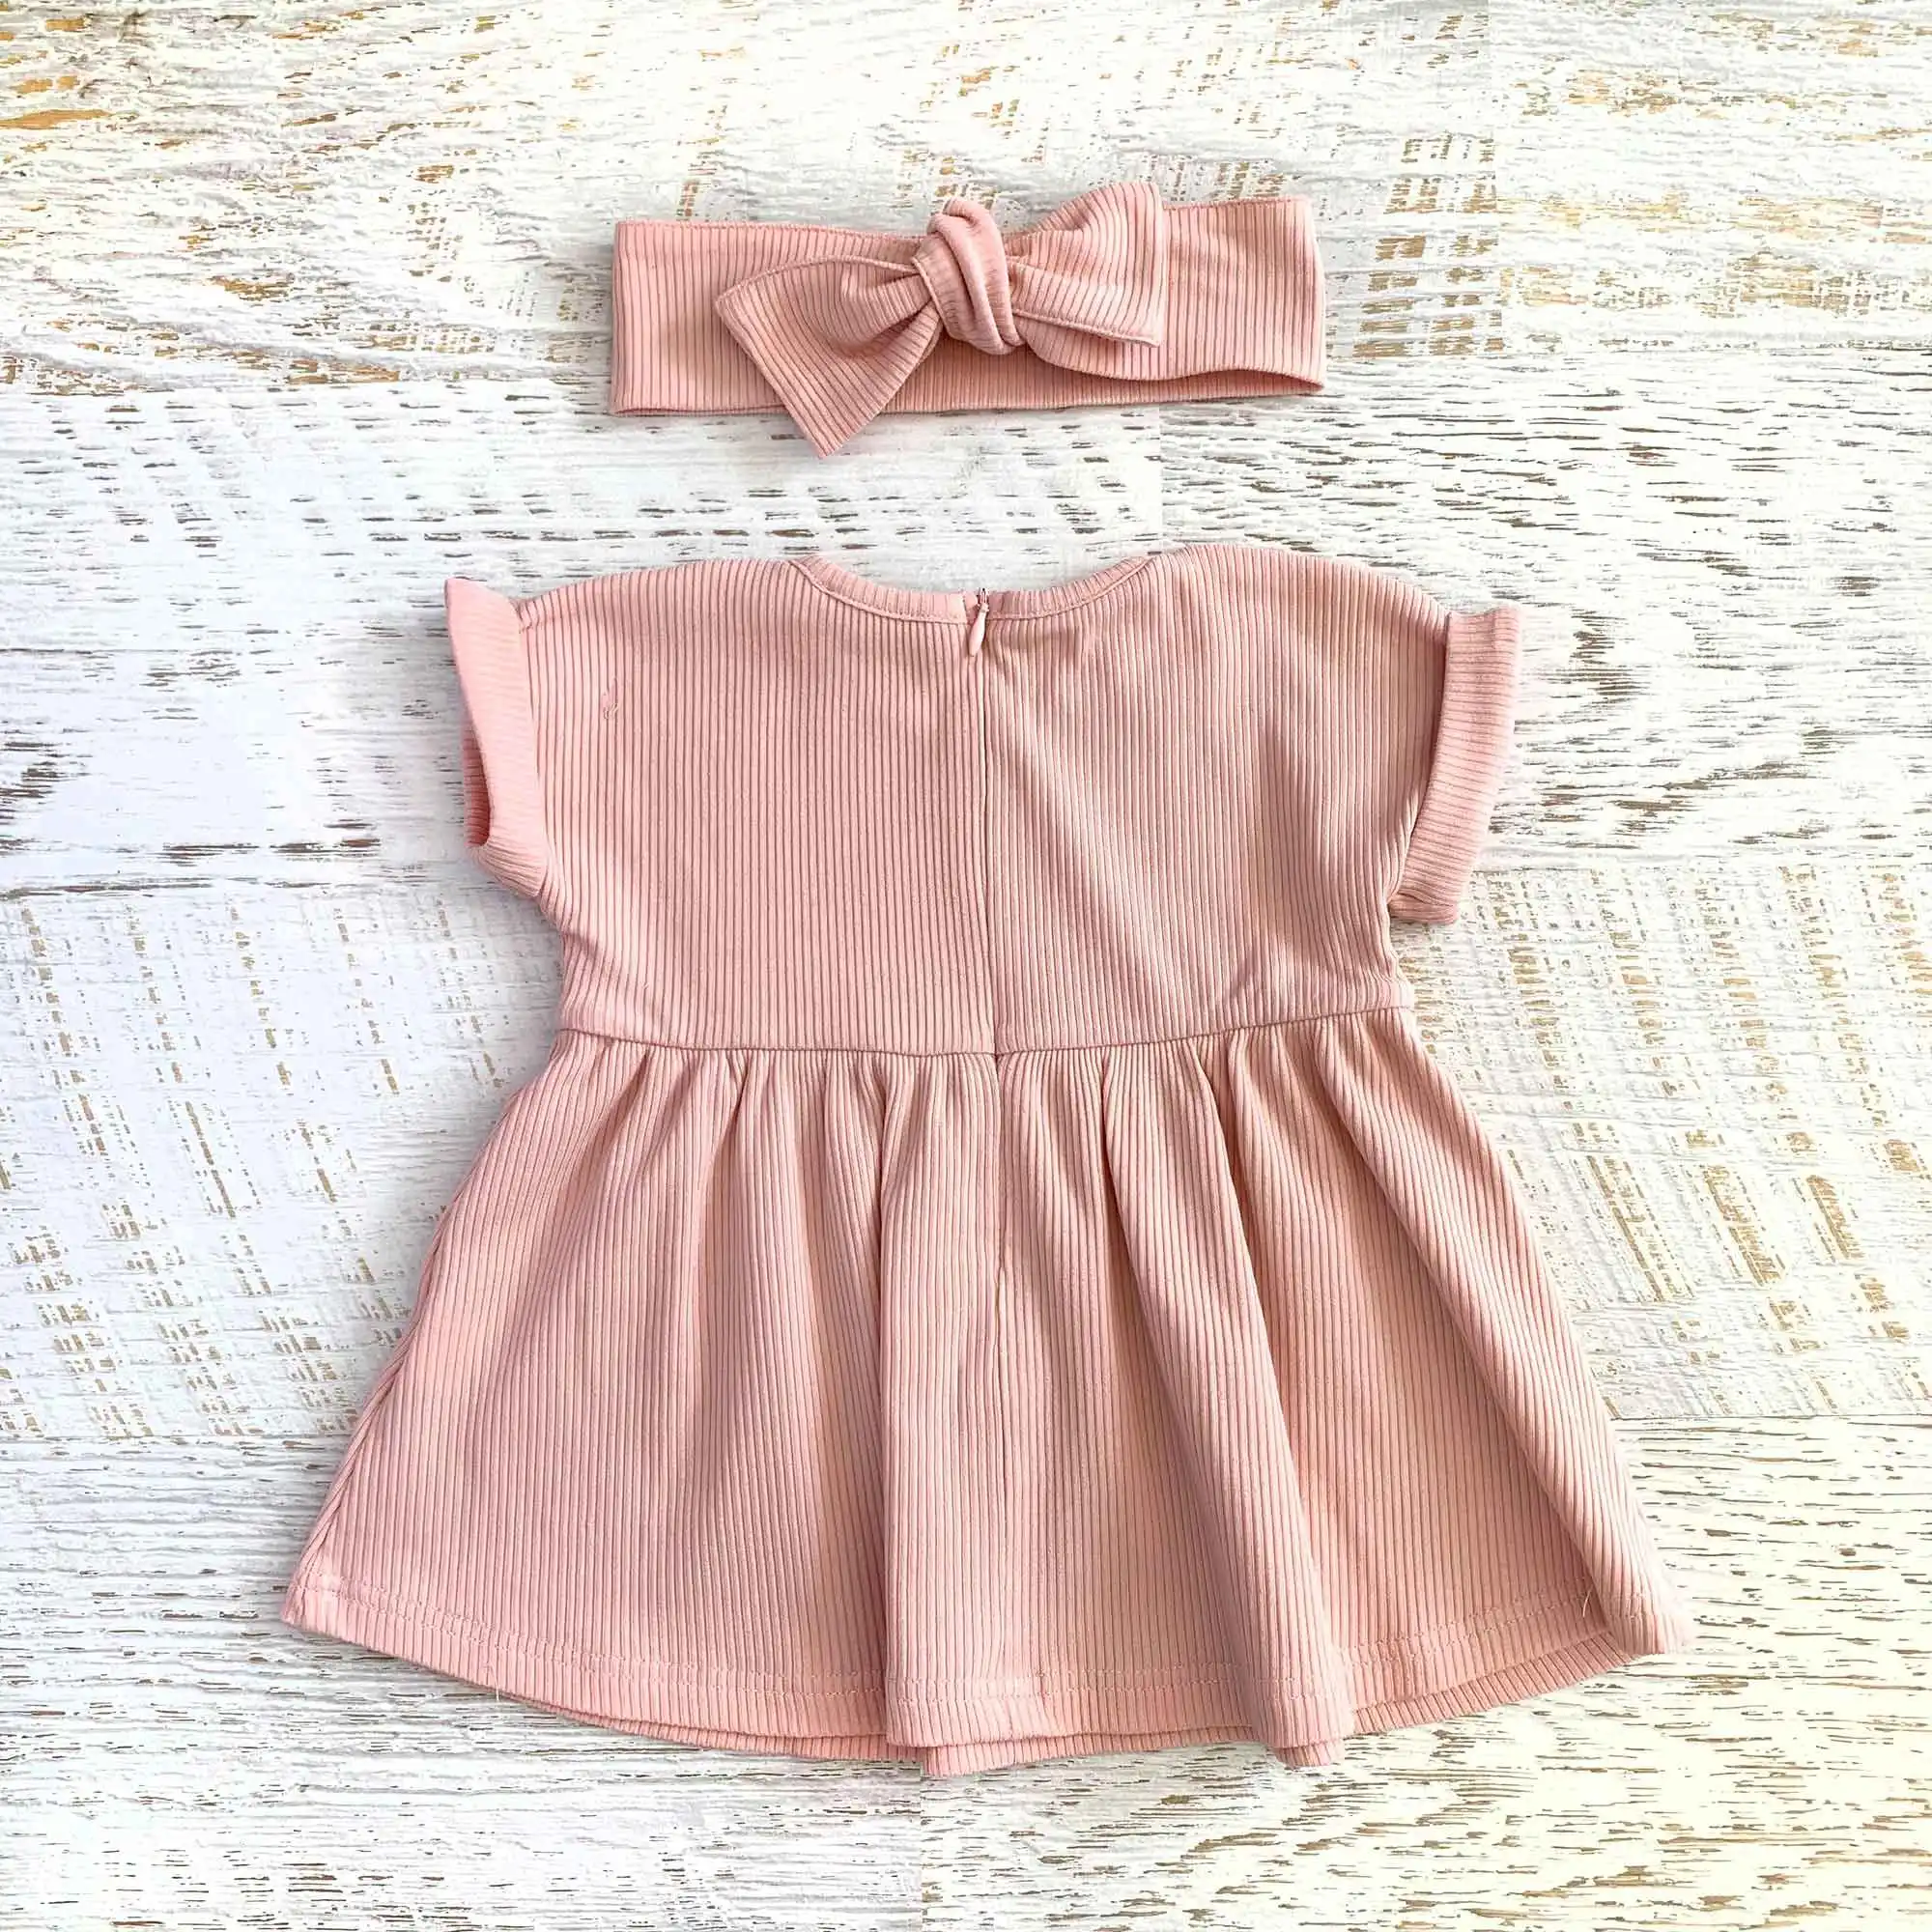 Australia Summer Baby Ribbed Dress Plain Pink Muslin Linen Girls Kids T Shirt Dress